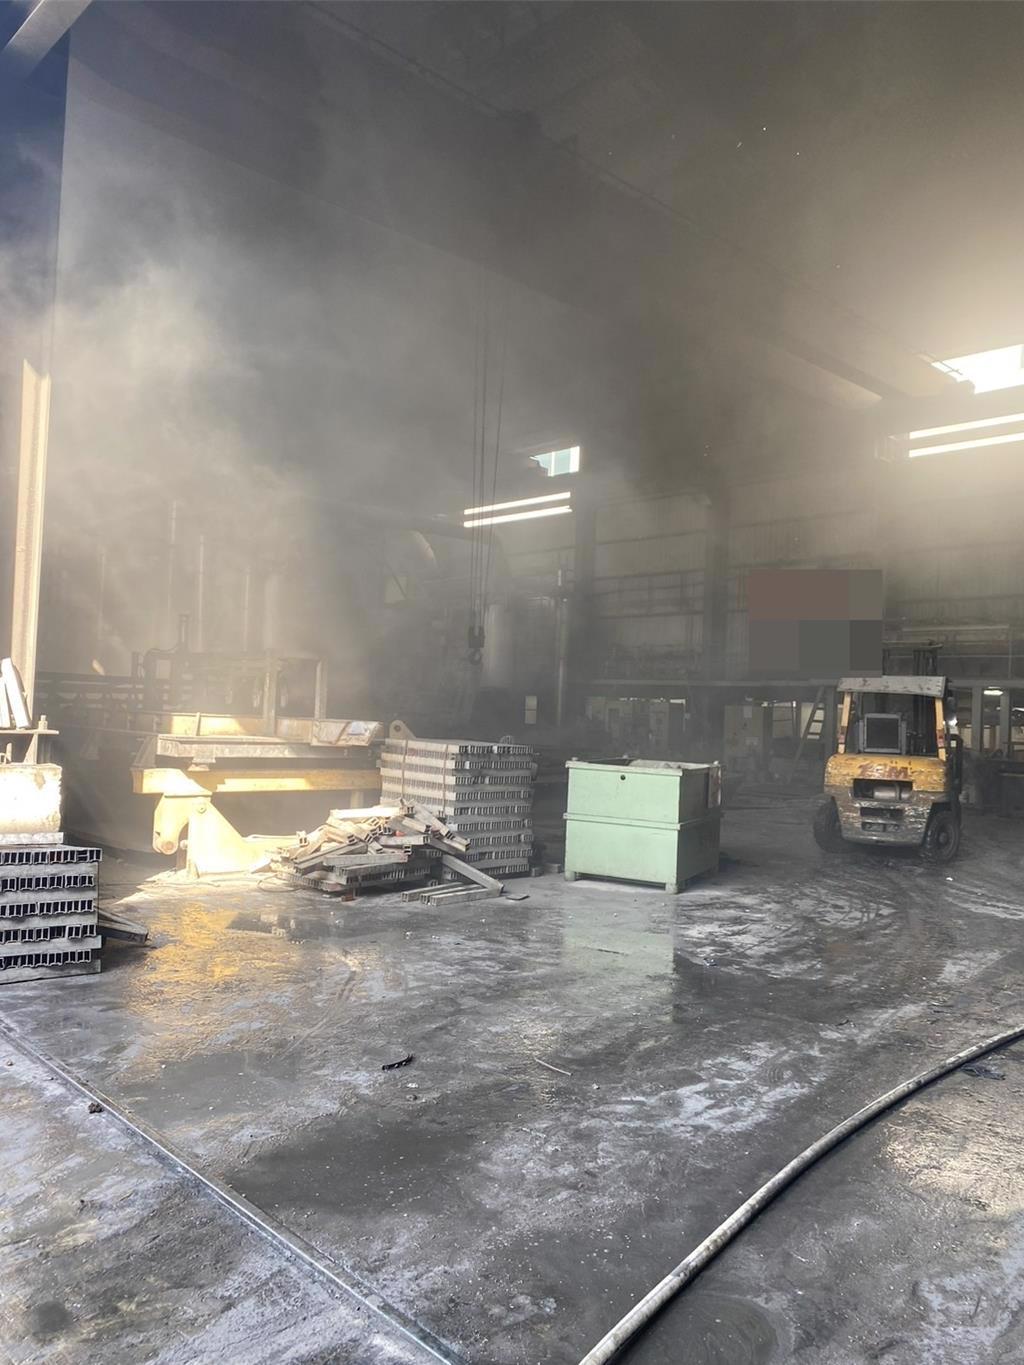 發生爆炸的鋁業工廠。